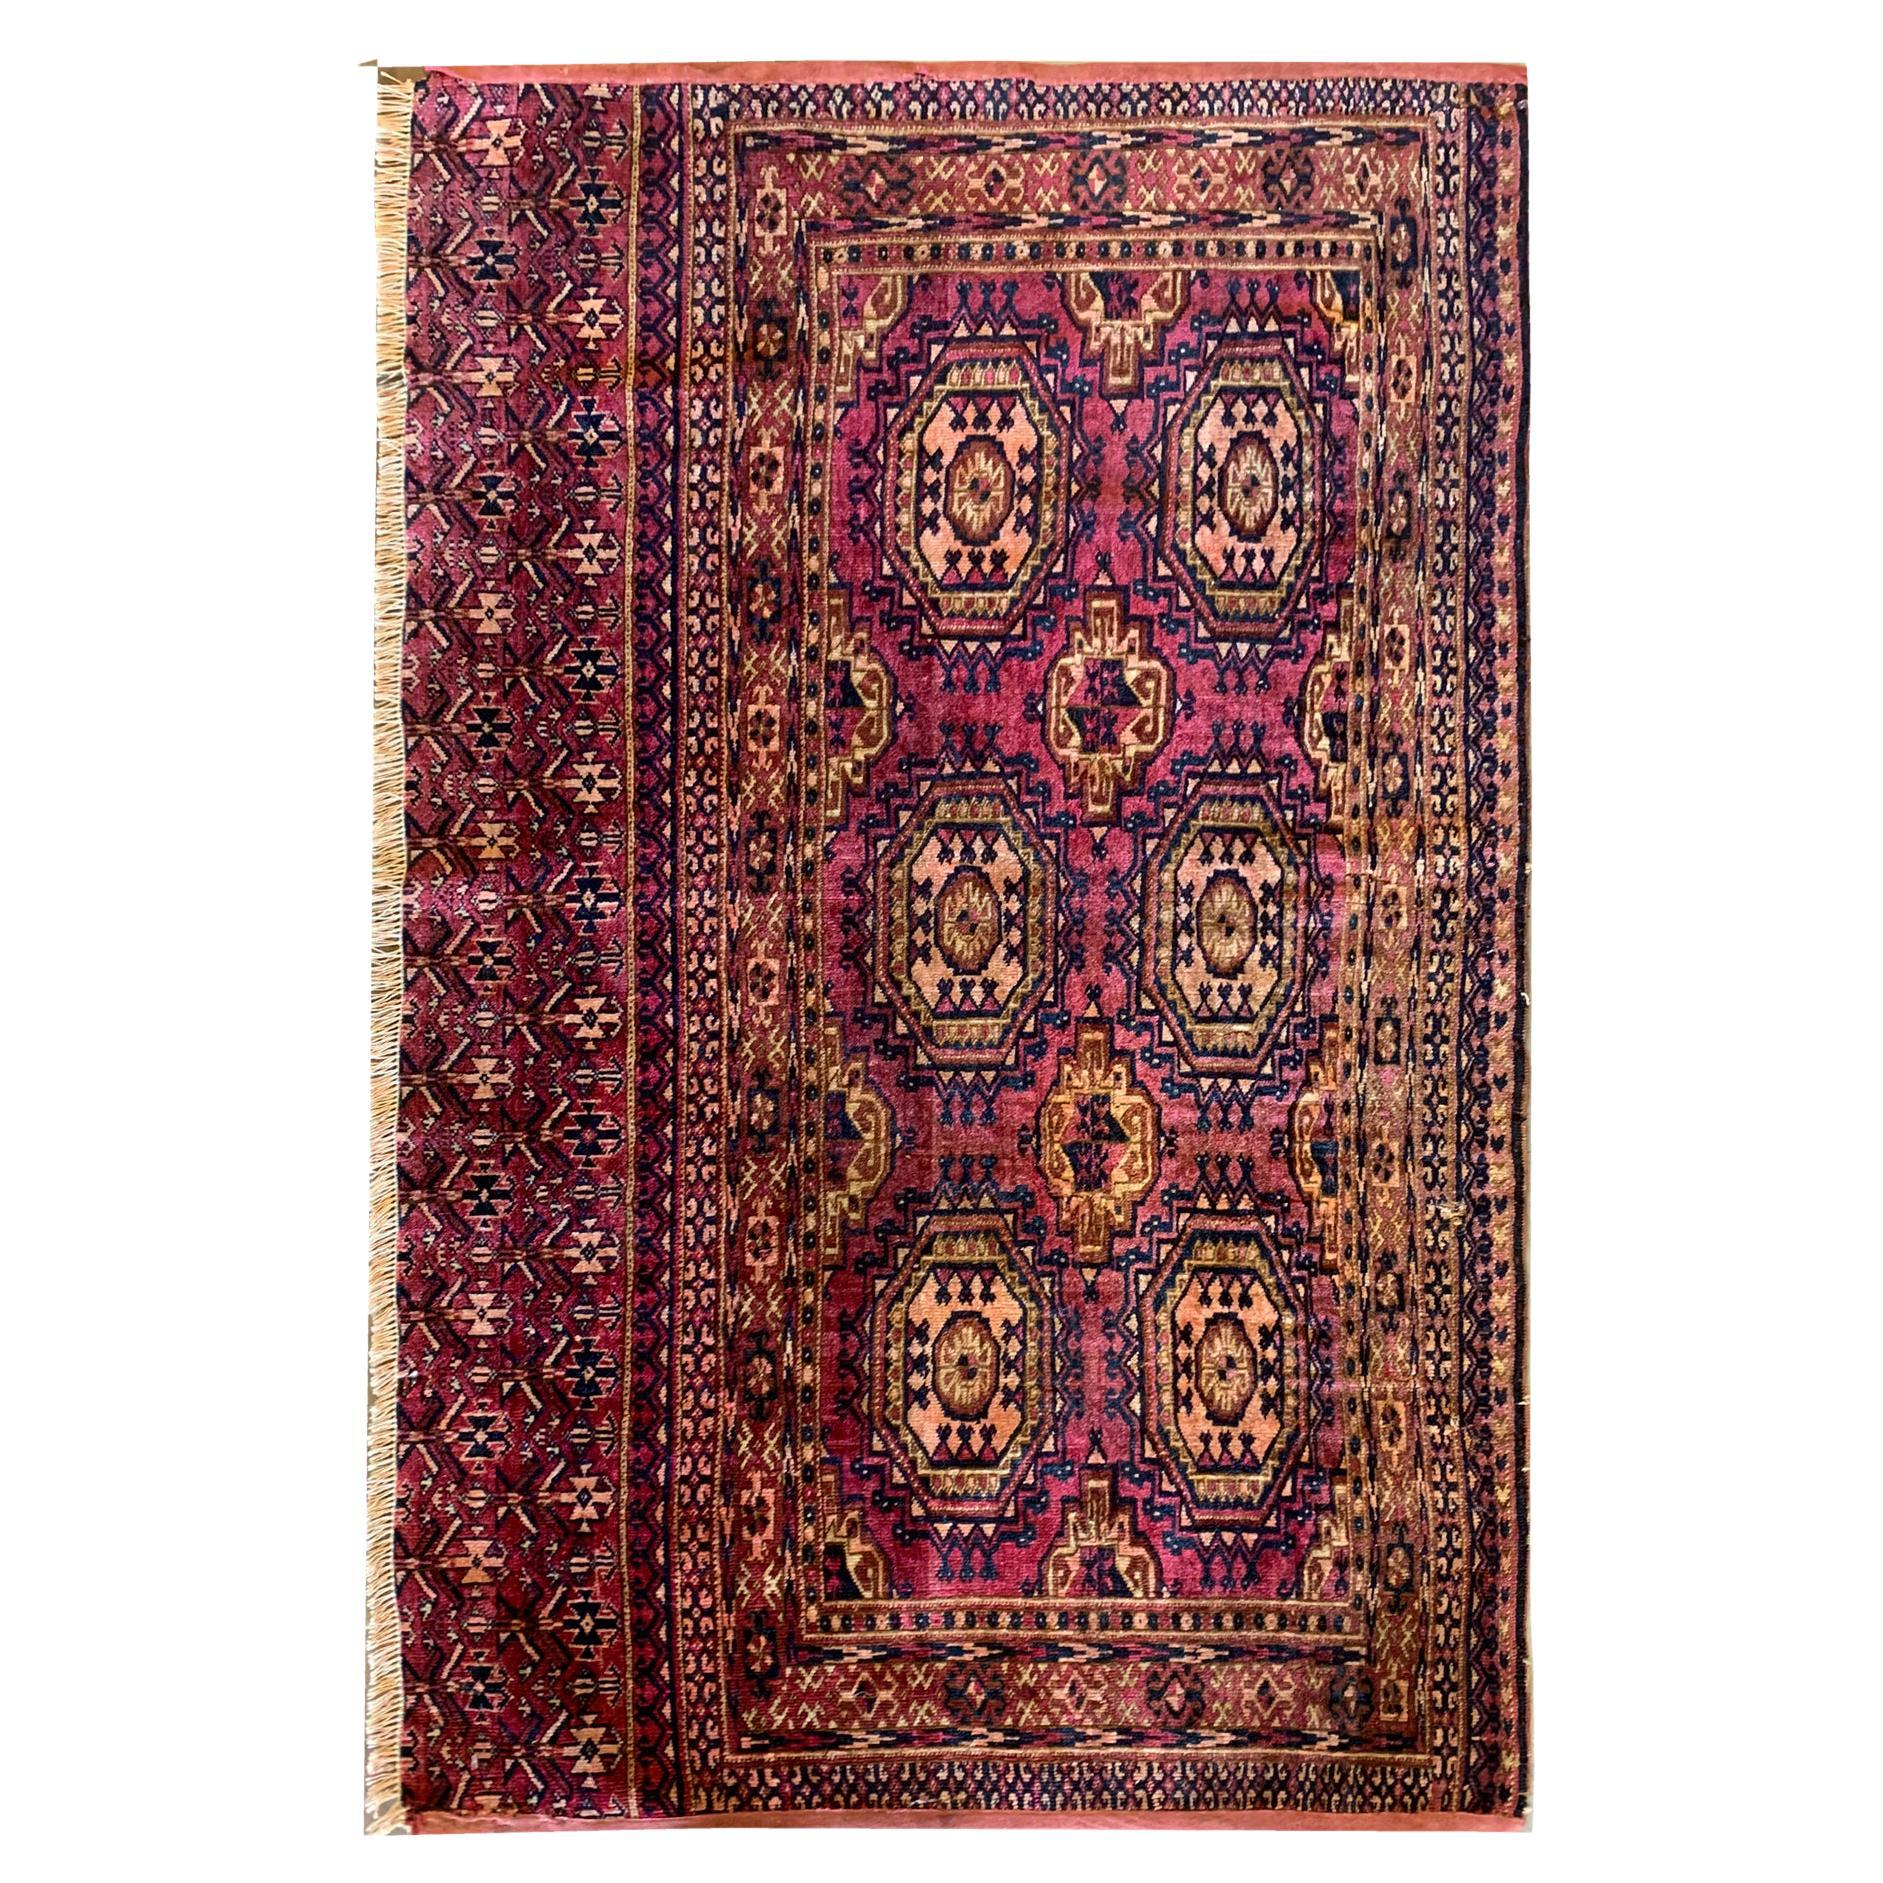 Antike Teppiche Handgefertigter türkischer Teppich aus rosafarbener Seide